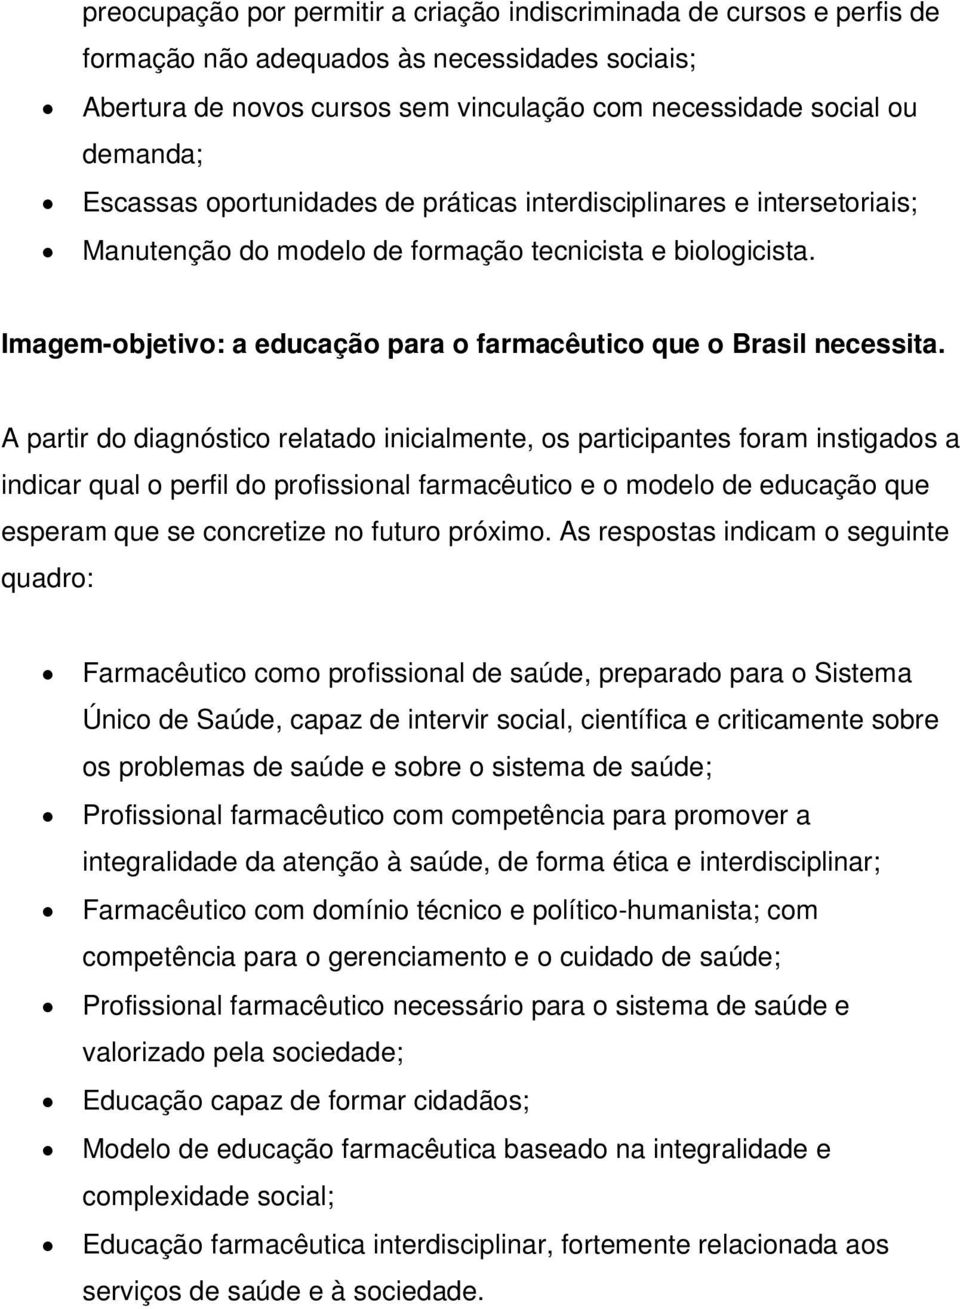 Imagem-objetivo: a educação para o farmacêutico que o Brasil necessita.